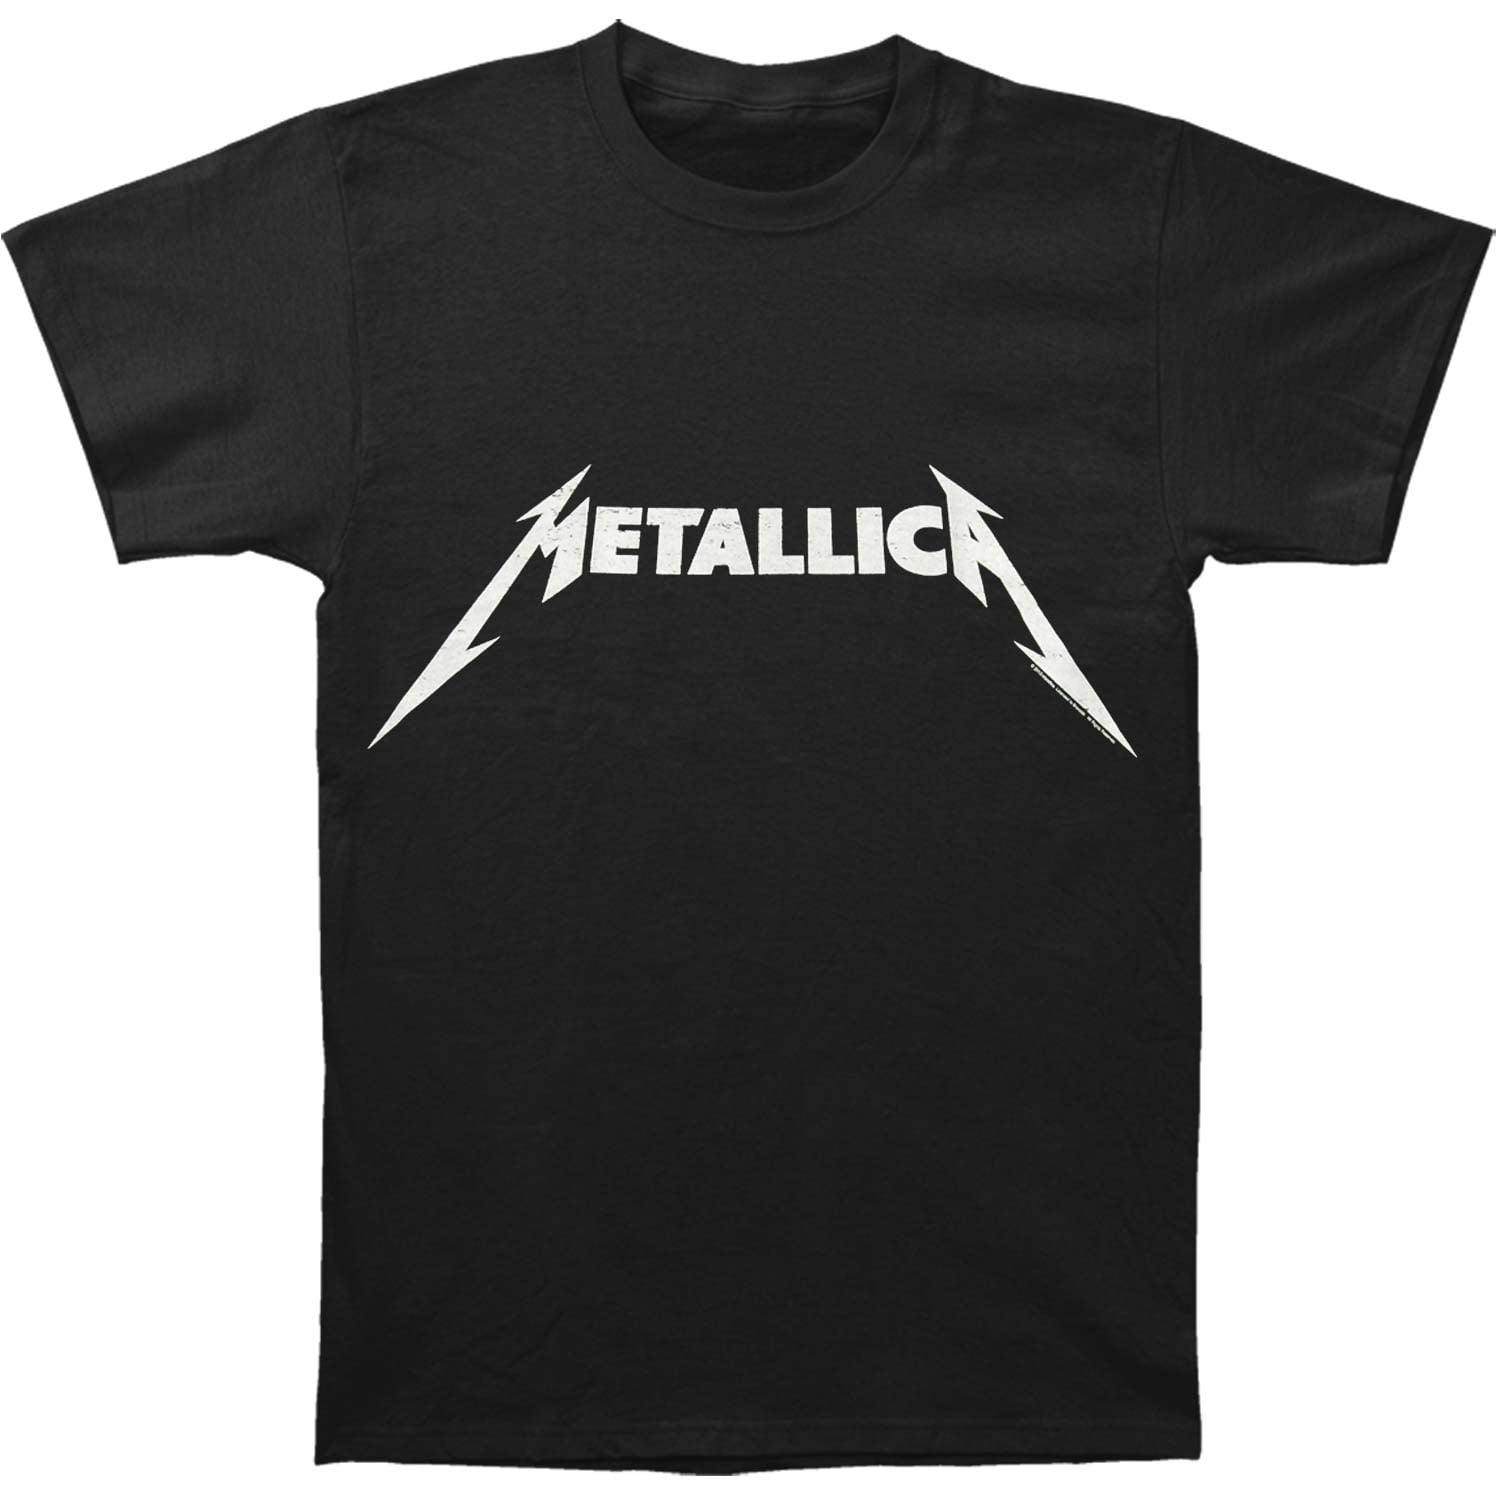 Metallica Men's Classic Logo T-shirt Black - Walmart.com